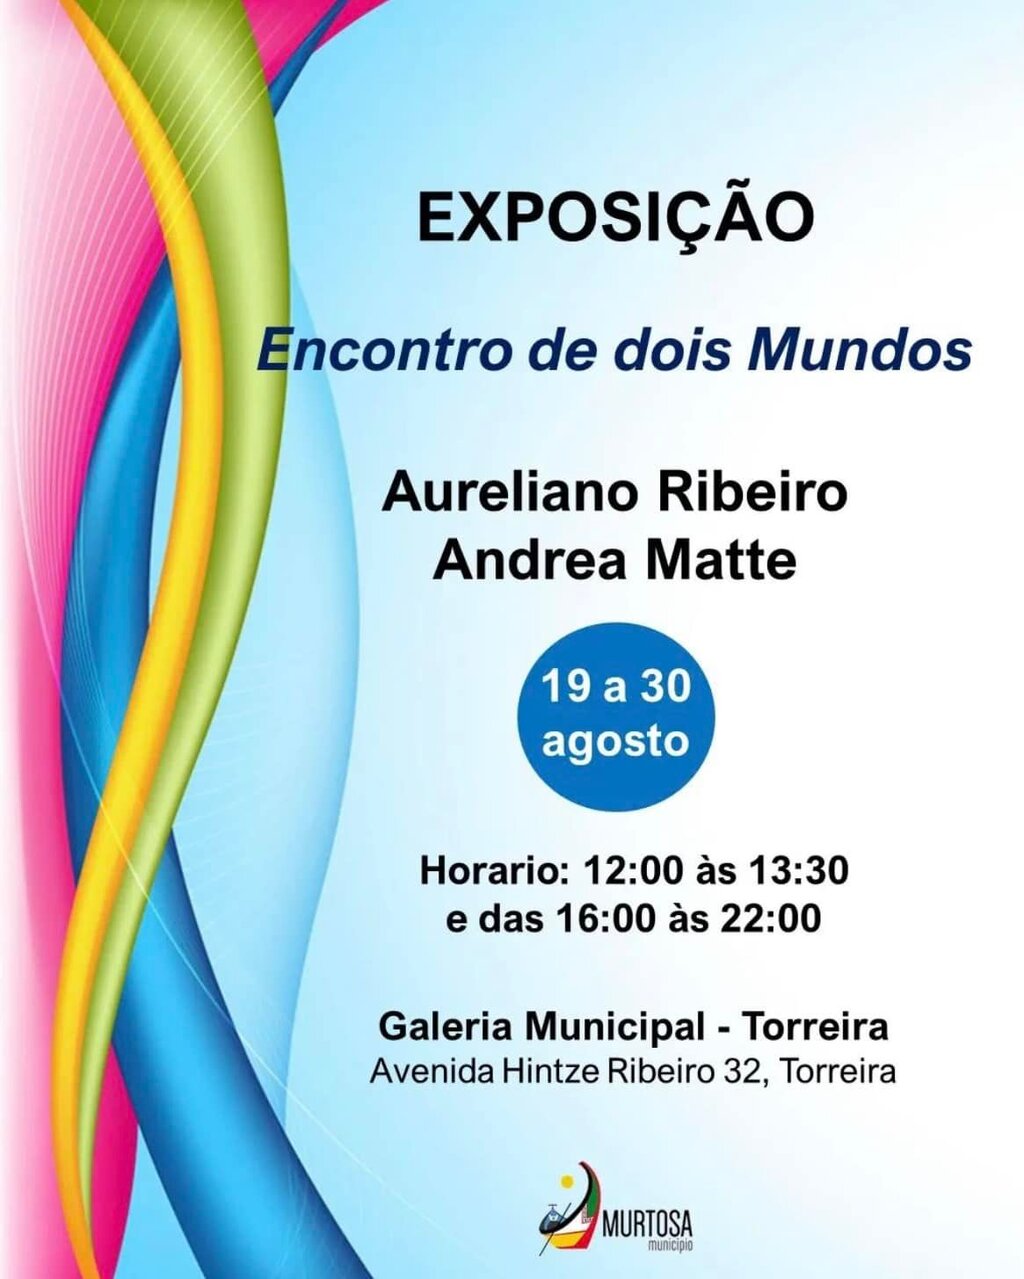 Exposição "Encontro de Dois Mundos" - Aureliano Ribeiro e Andrea Matte